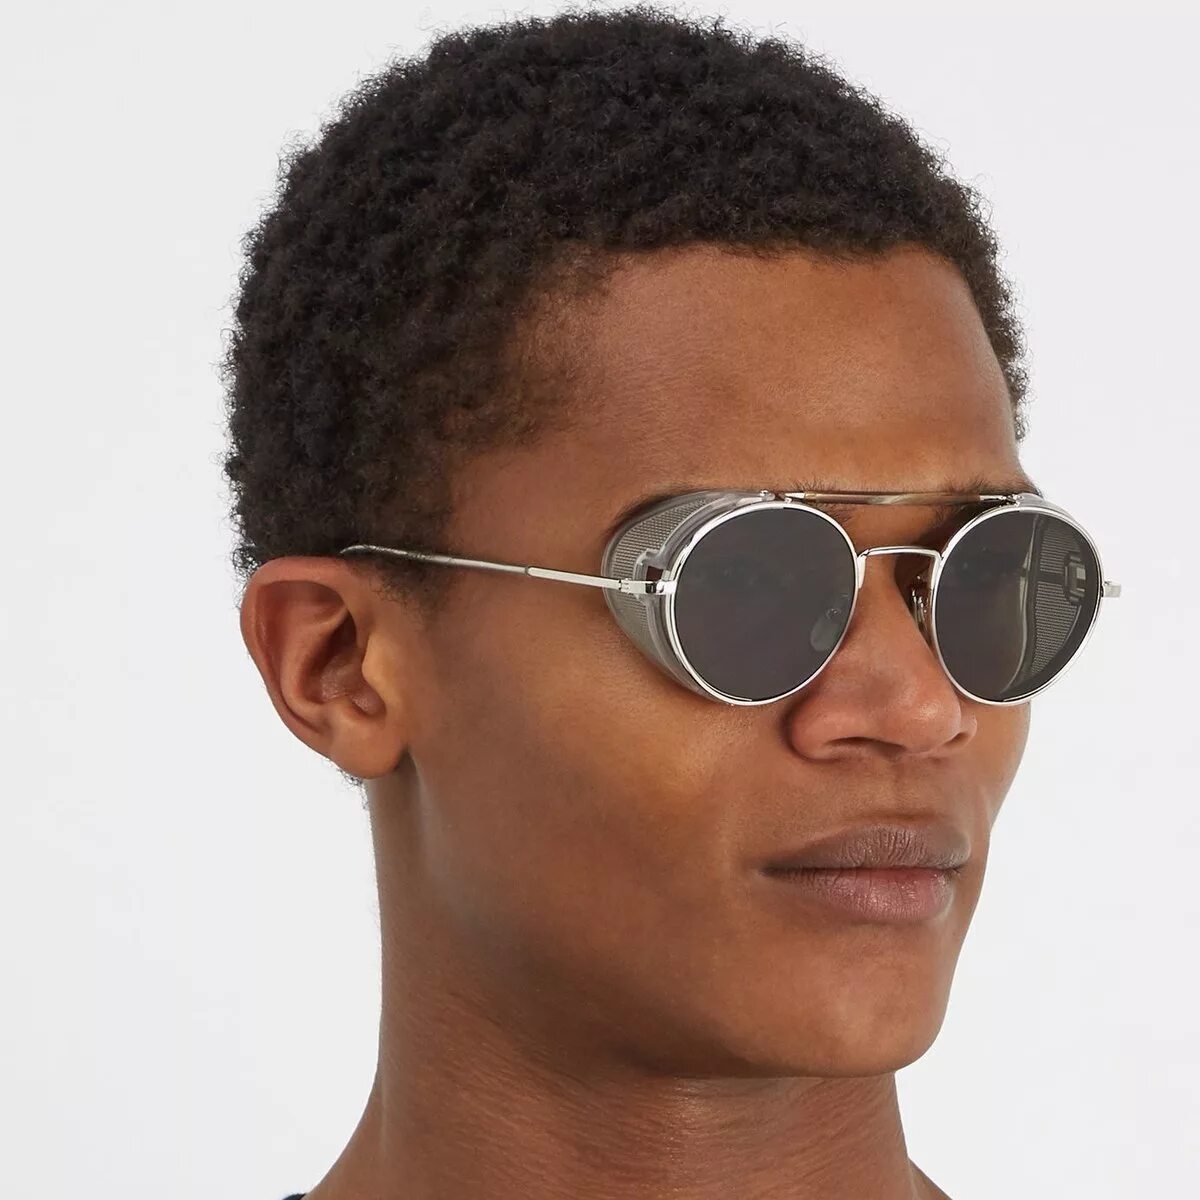 Thom Browne очки мужские. Thom Browne Round Sunglasses. Очки Thom Browne 5523. Thom Browne очки солнцезащитные.